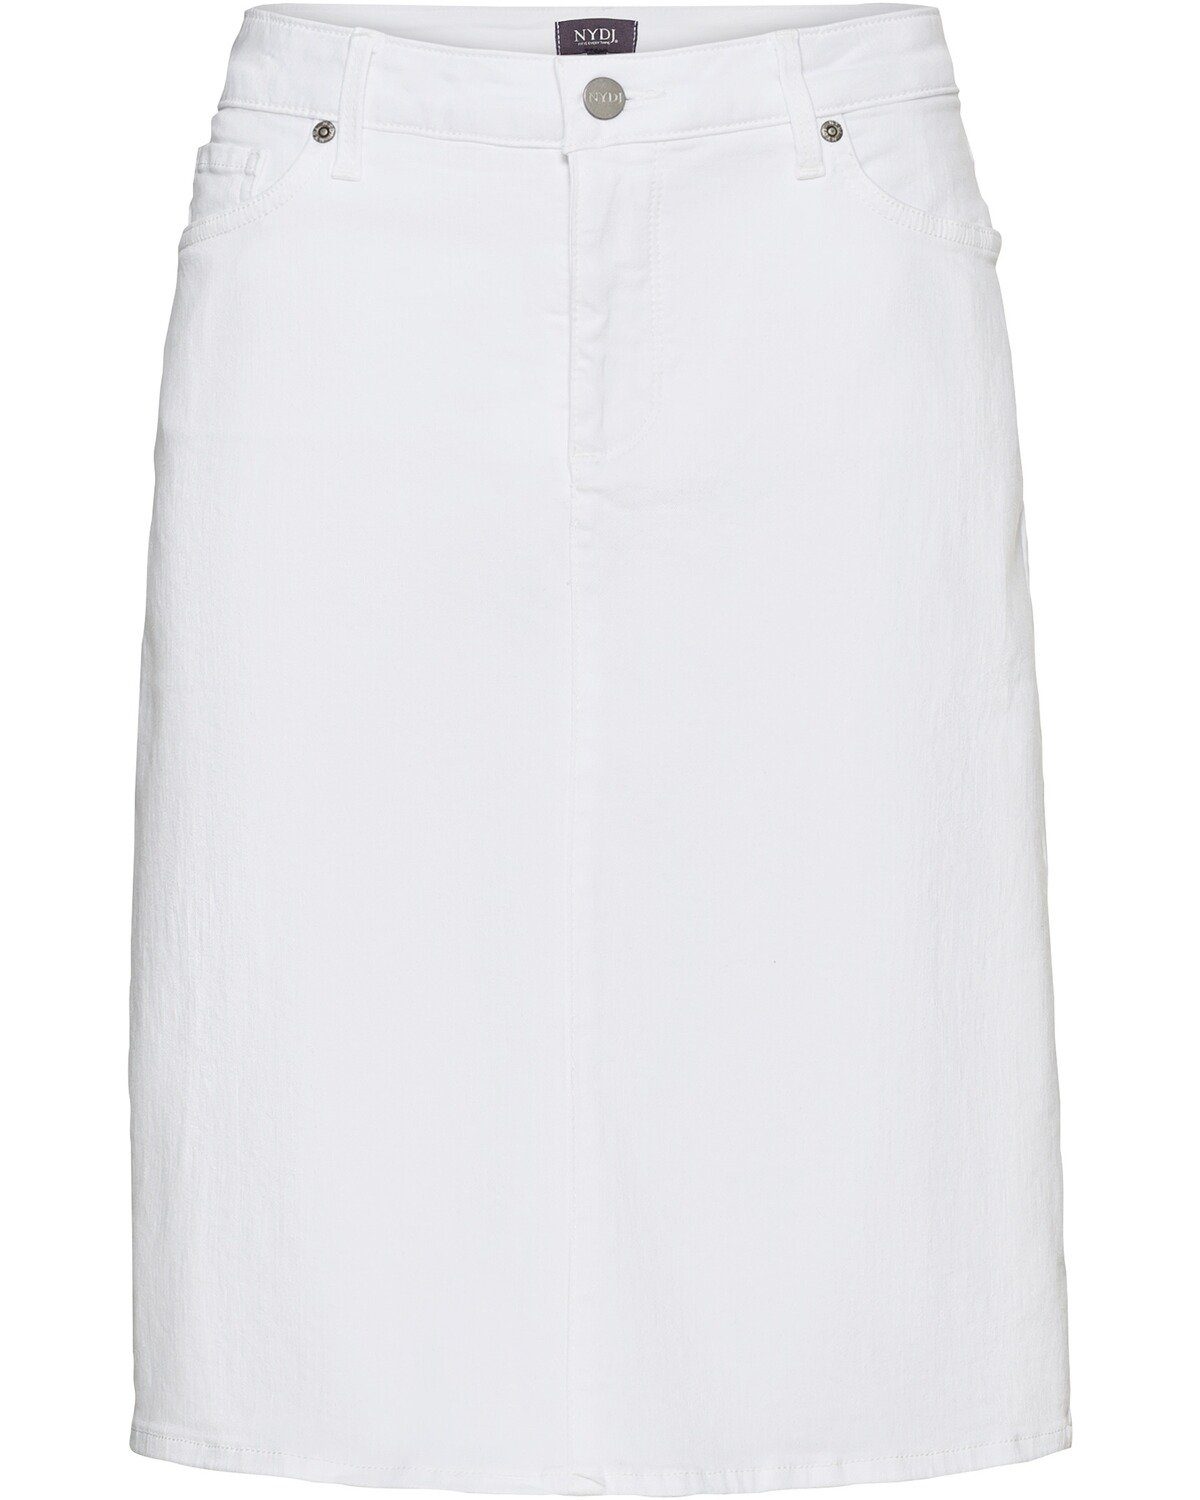 Weiße Jeansröcke für Damen online kaufen | OTTO